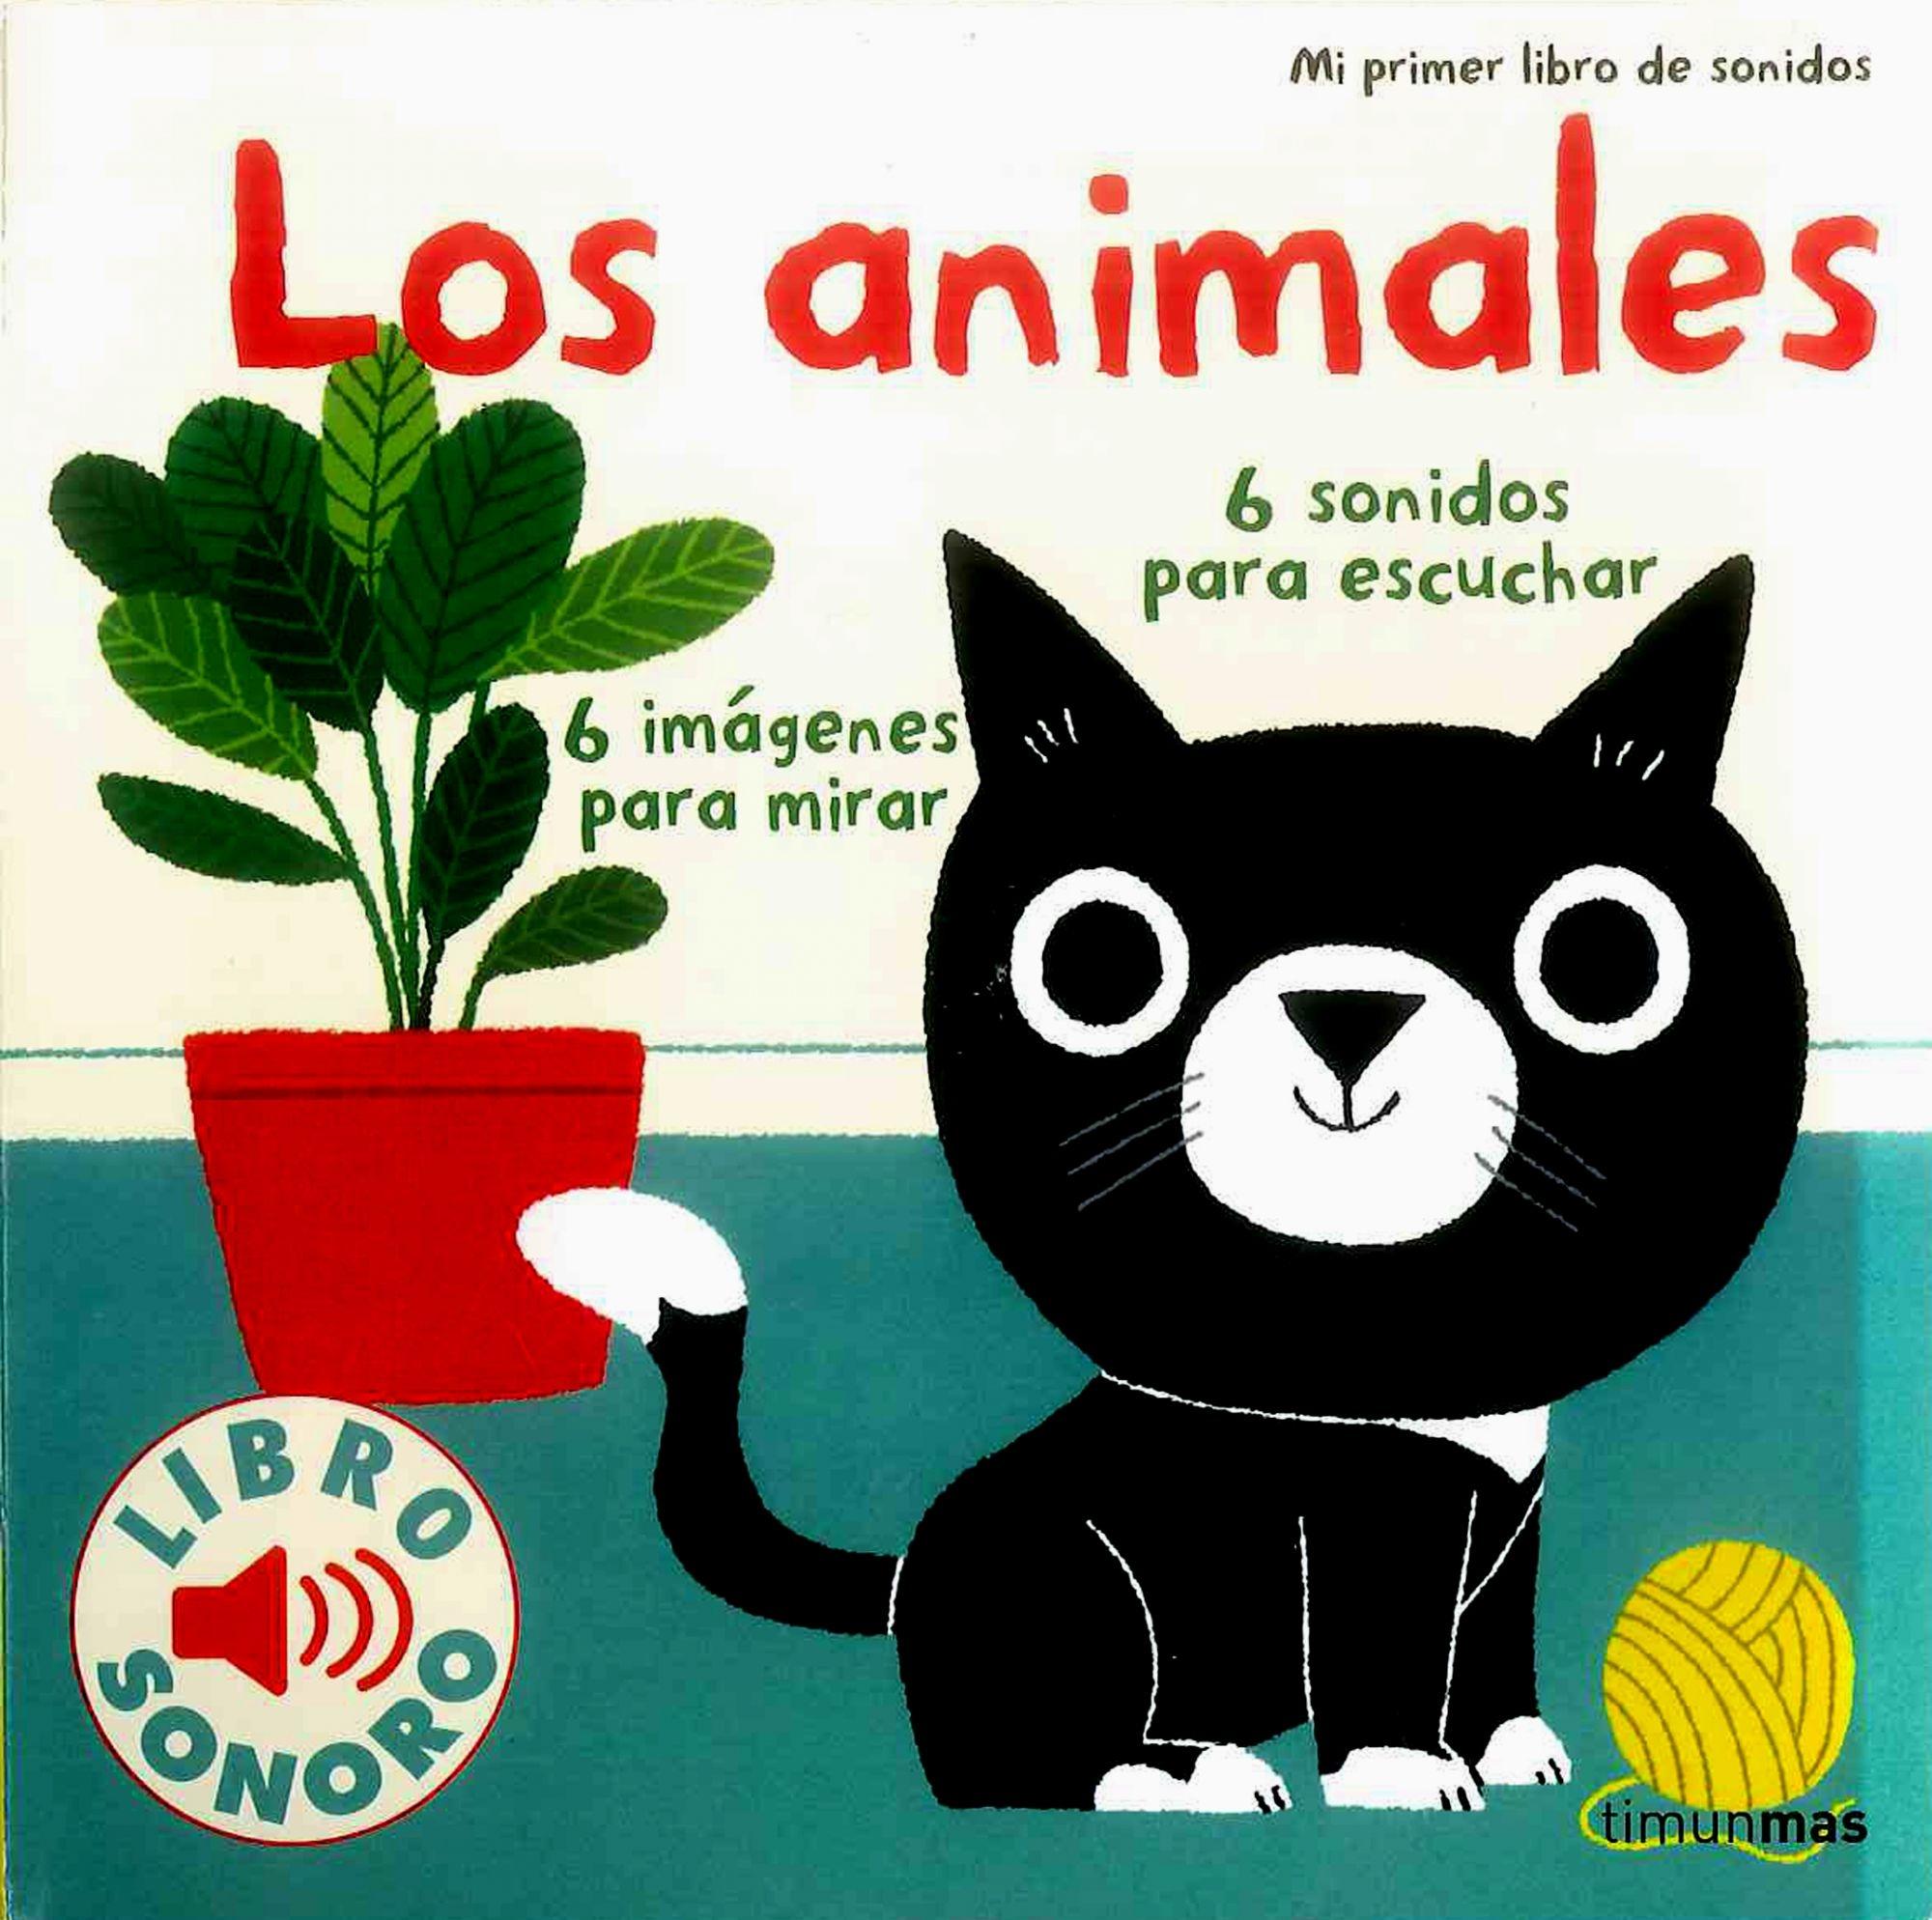 Los Animales "Mi Primer Libro de Sonidos"